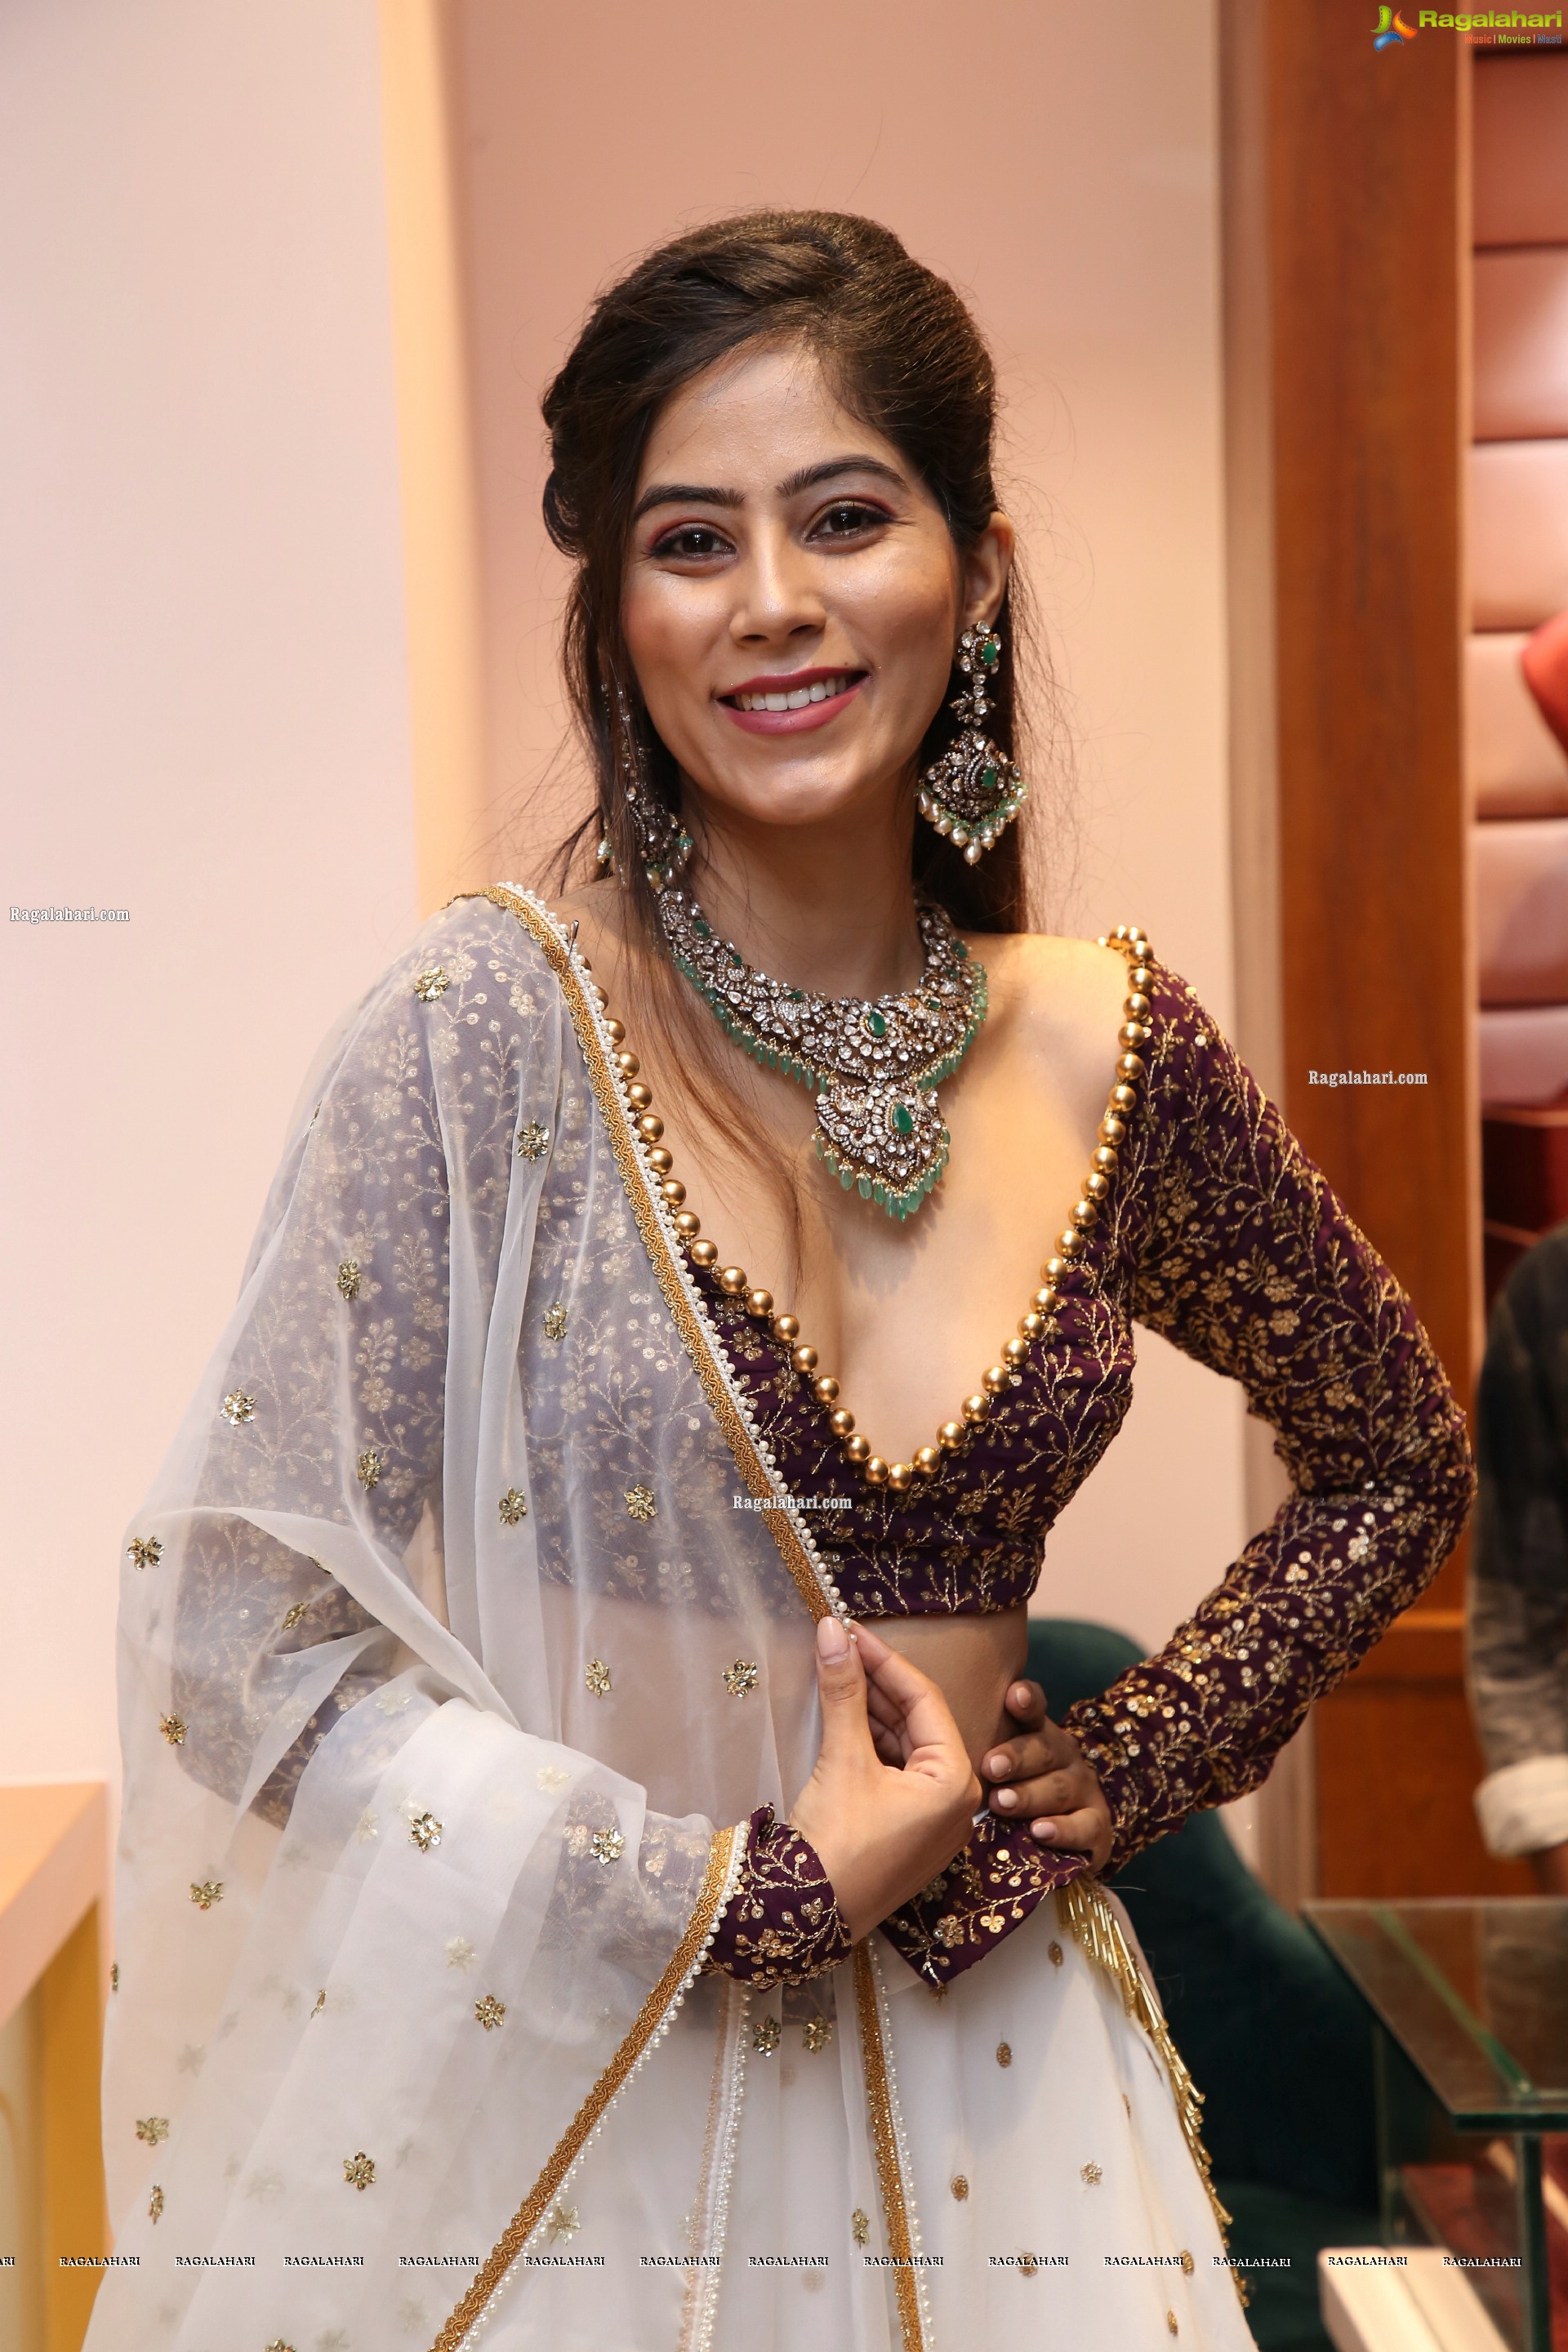 Nikita Tanwani Poses With Gold Jewellery, HD Photo Gallery